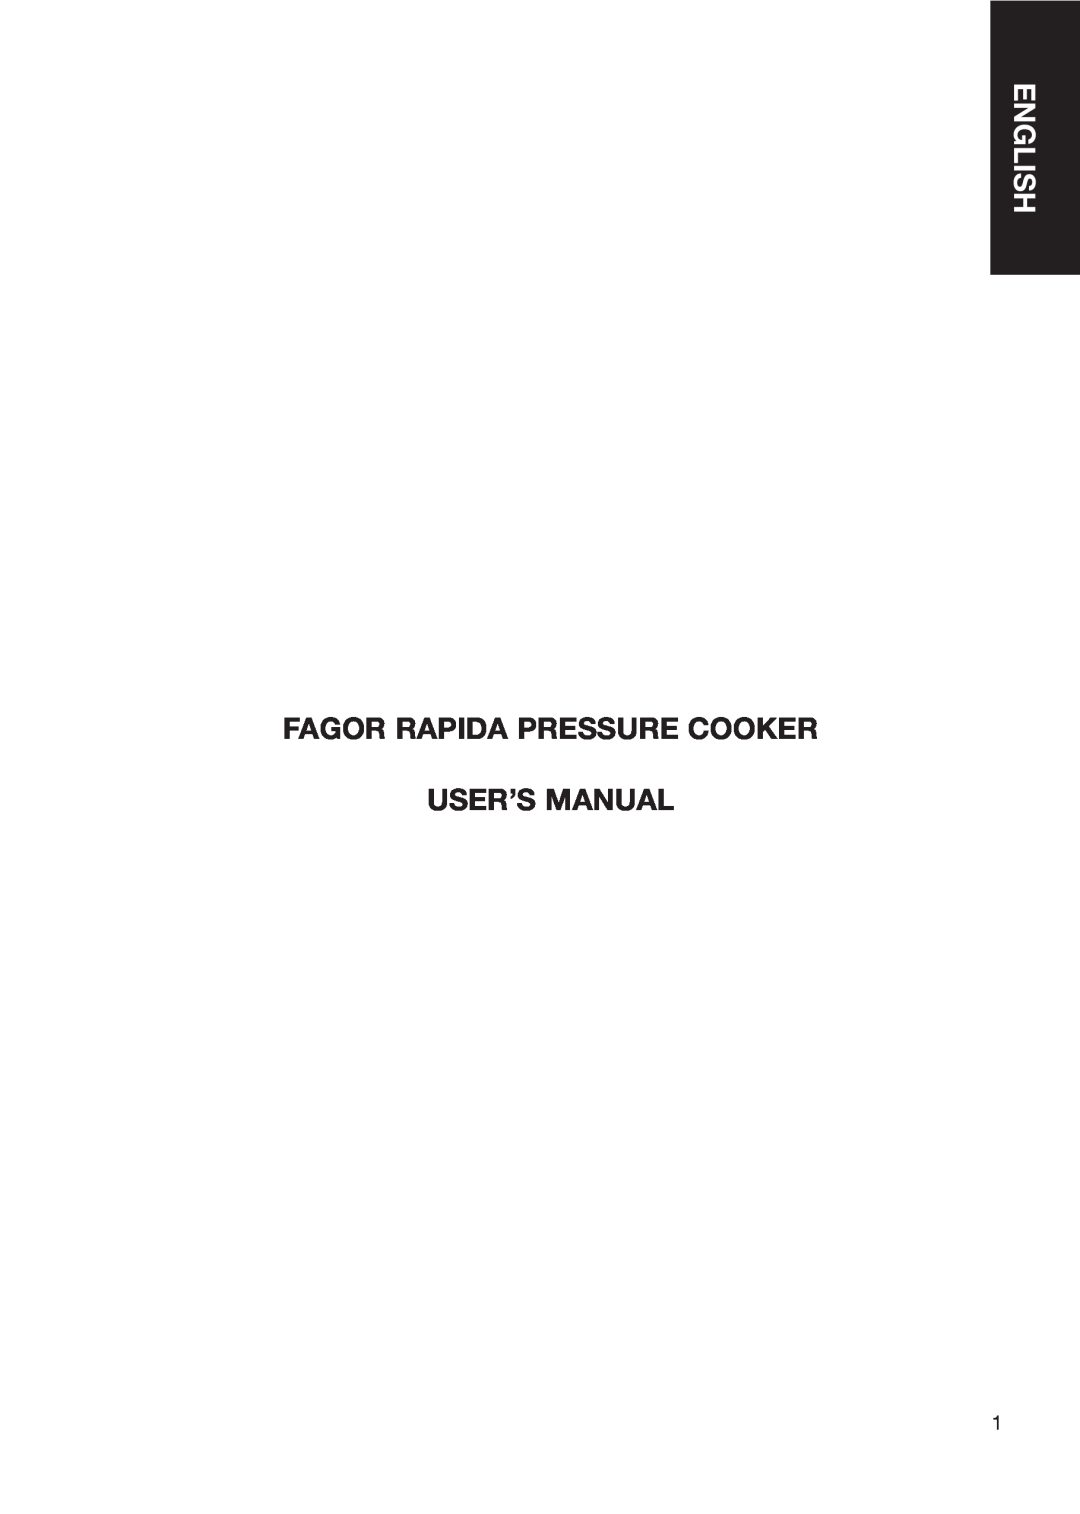 Fagor America user manual English, Fagor Rapida Pressure Cooker User’S Manual 